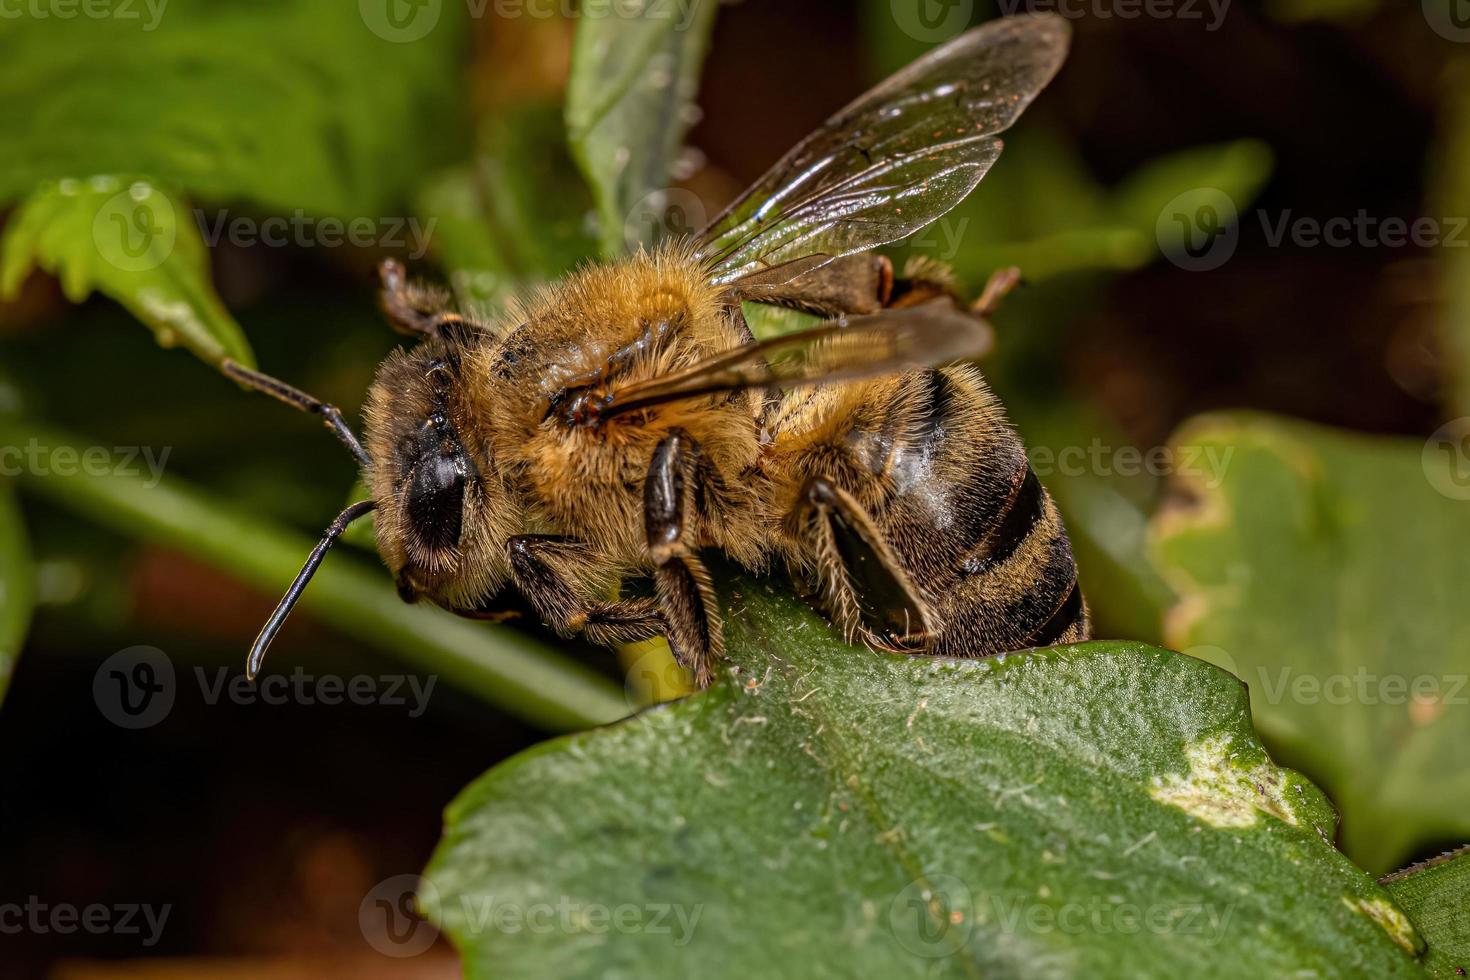 erwachsene weibliche westliche honigbiene foto